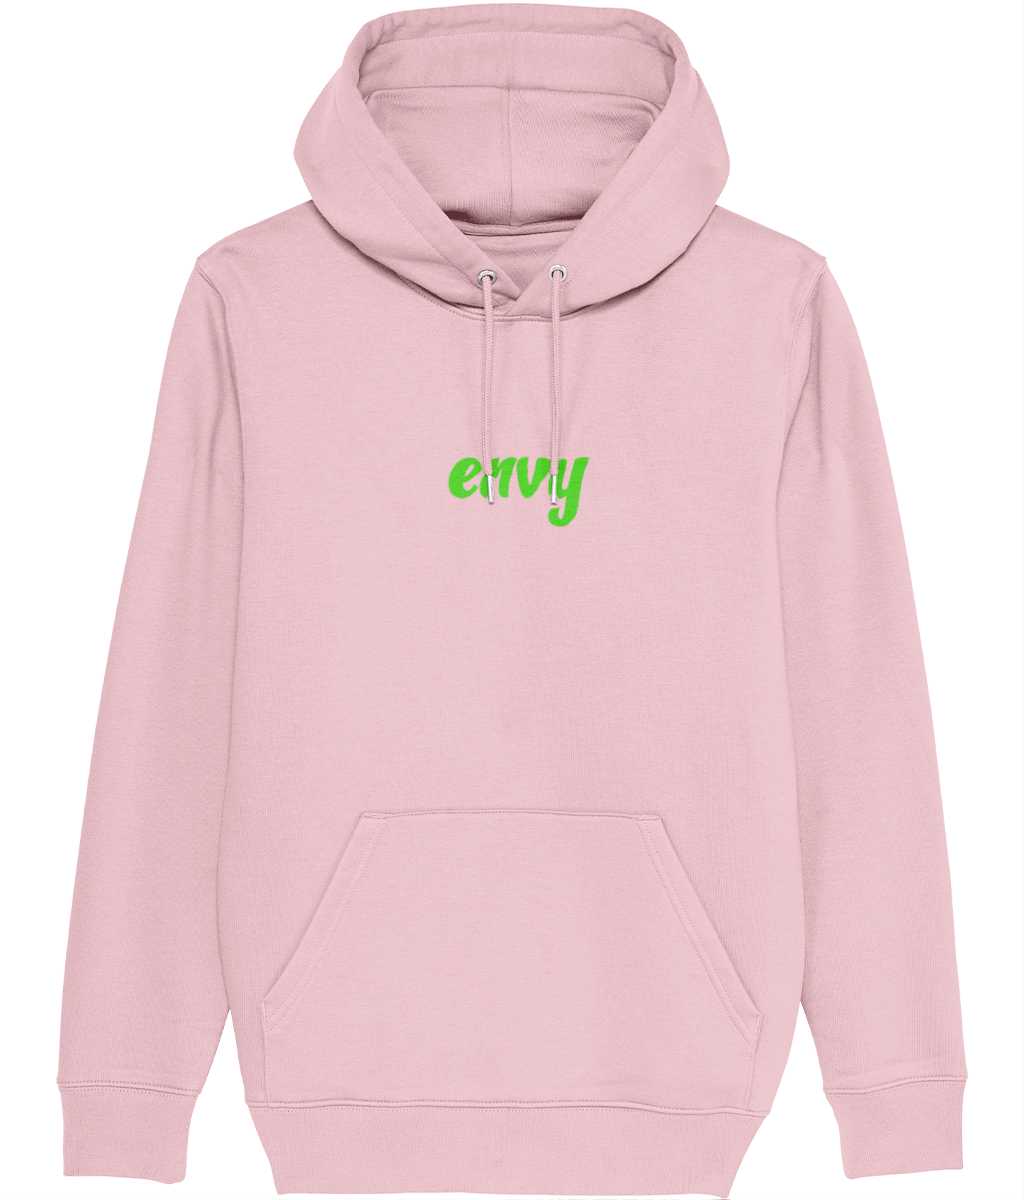 Envy non gender hoodie Cherchez La Femme brand